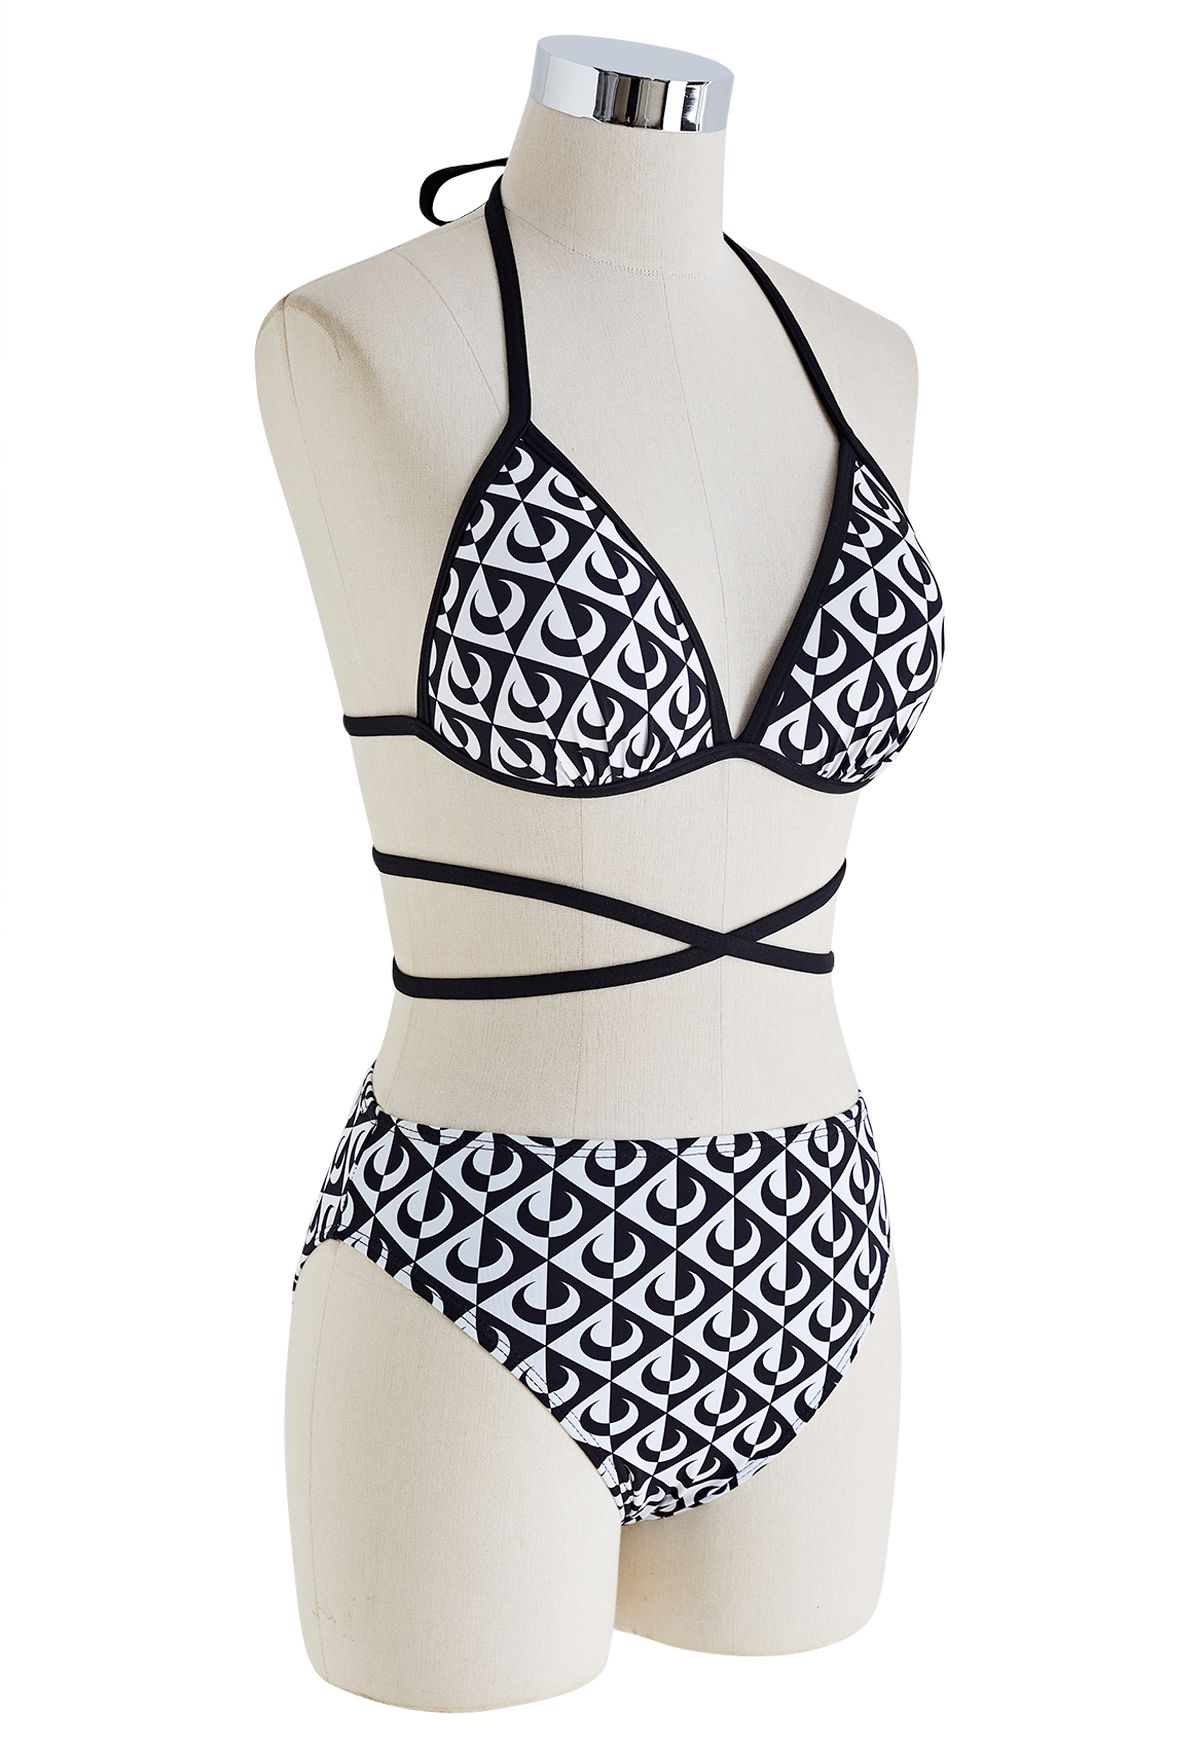 Conjunto de bikini con cuello halter de luna en blanco y negro